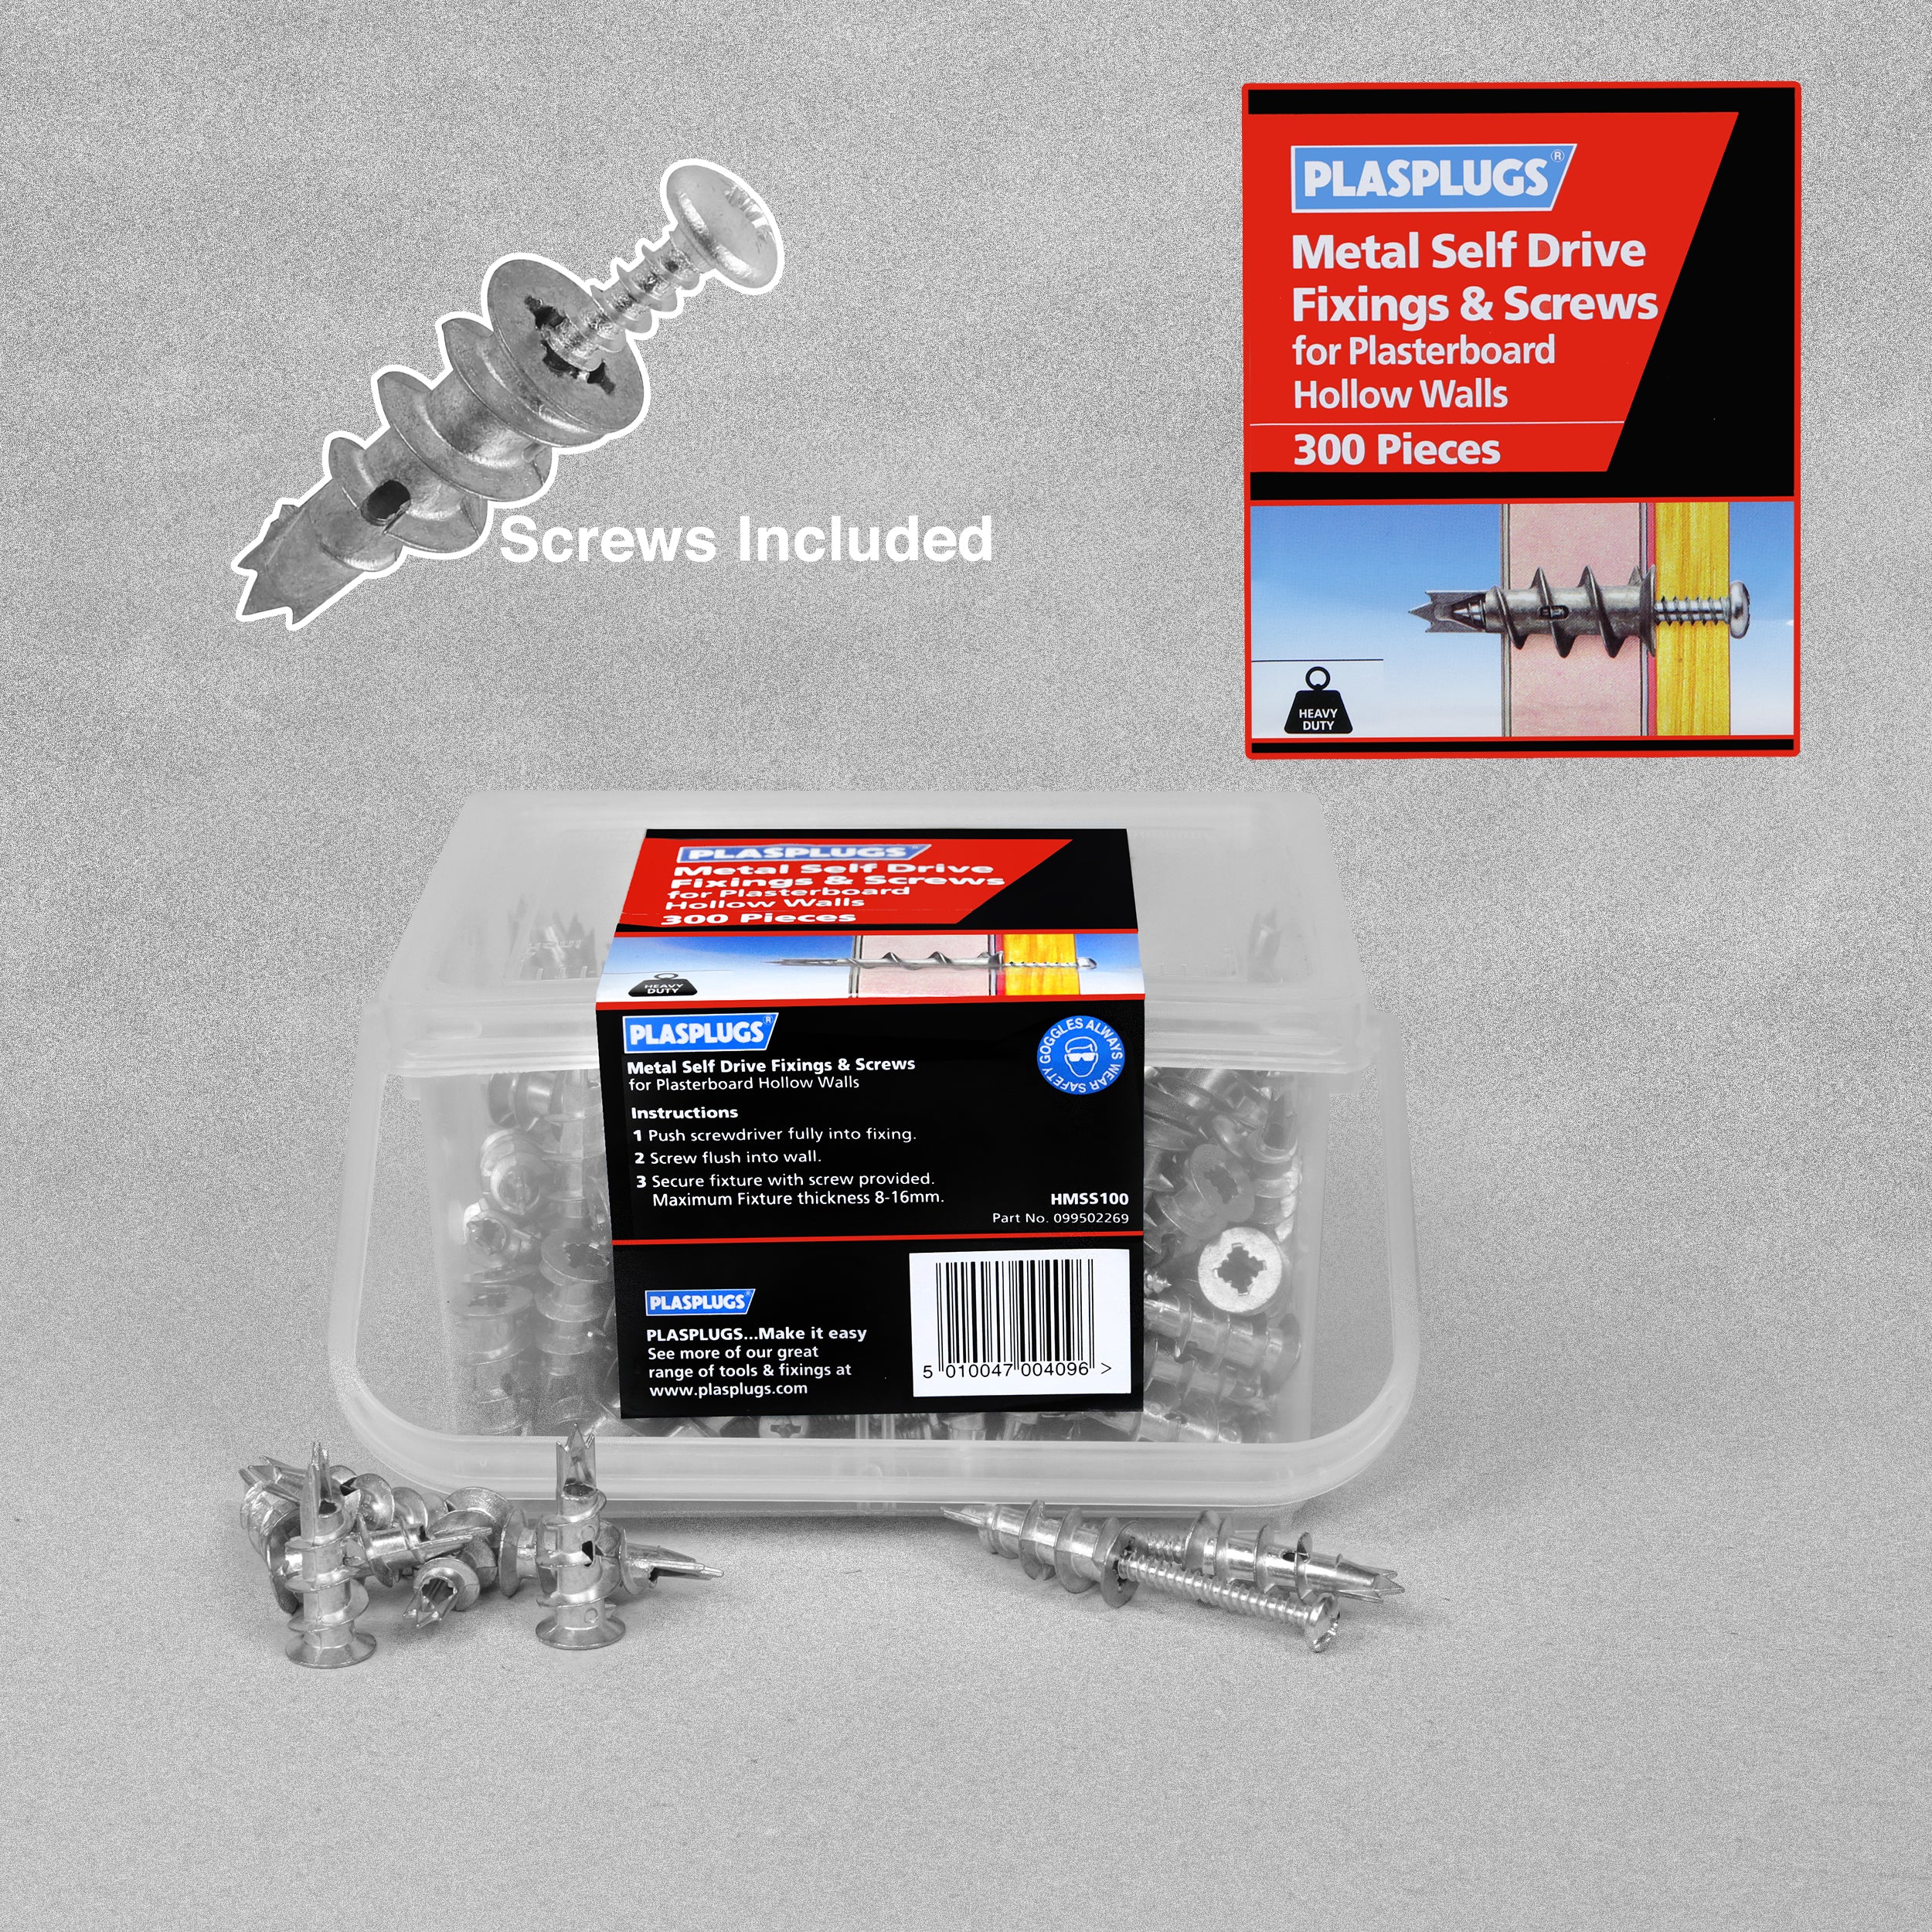 Plasplugs Metal Self Drive Fixings & Screws - 300 pieces (150 screws/150 plugs)